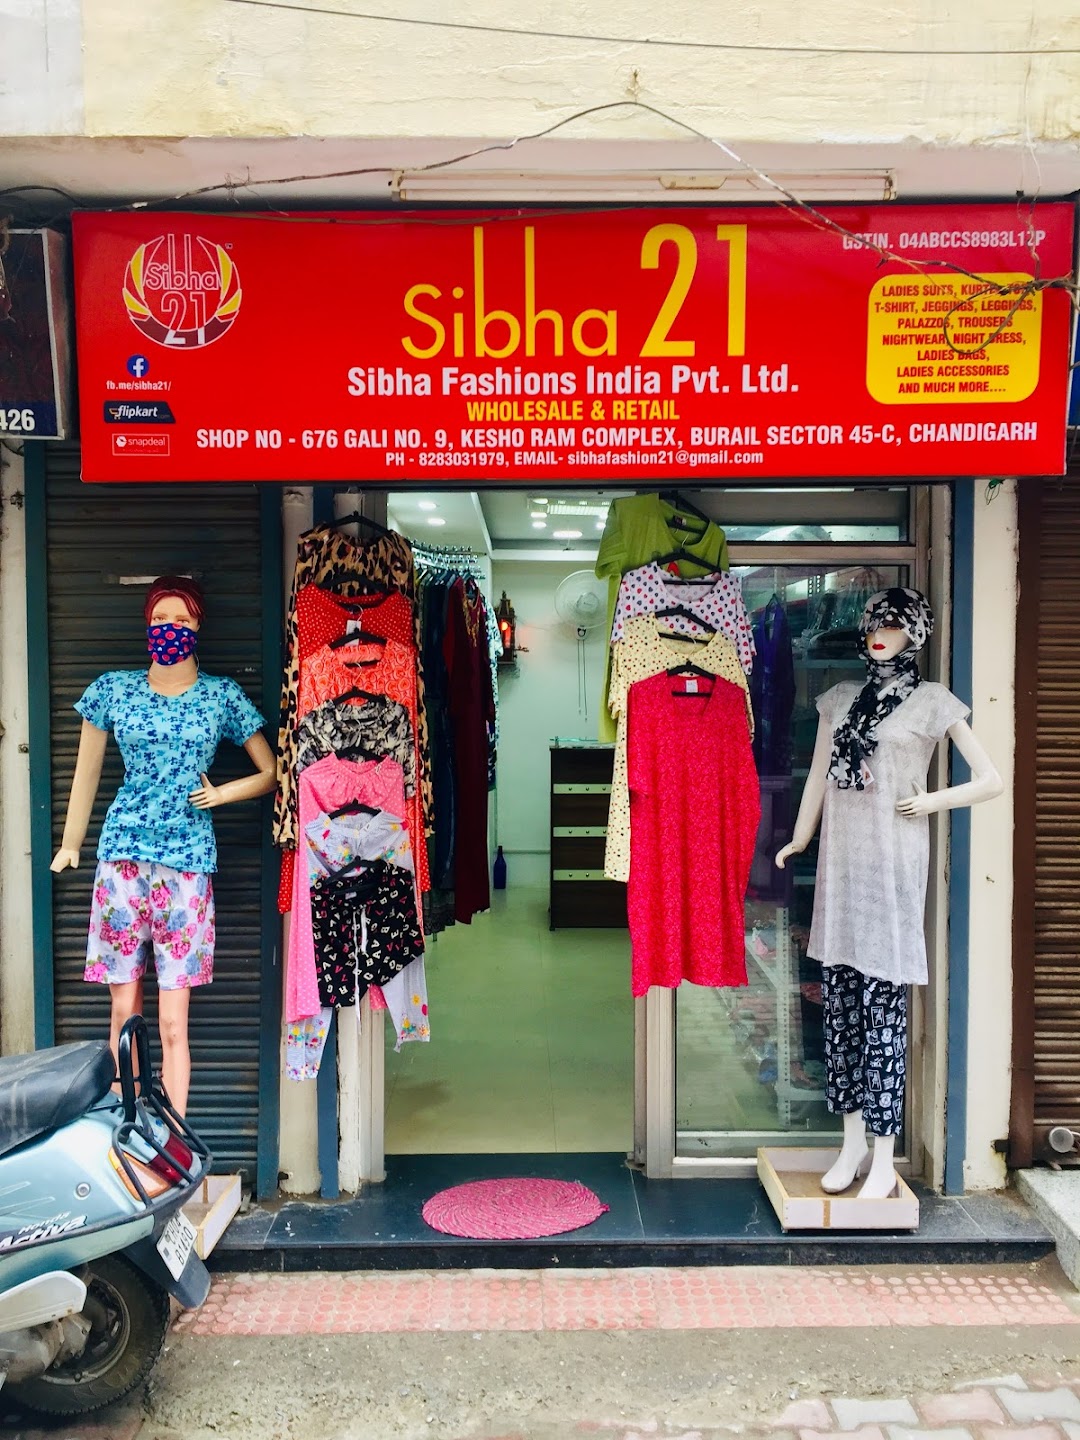 Sibha fashions